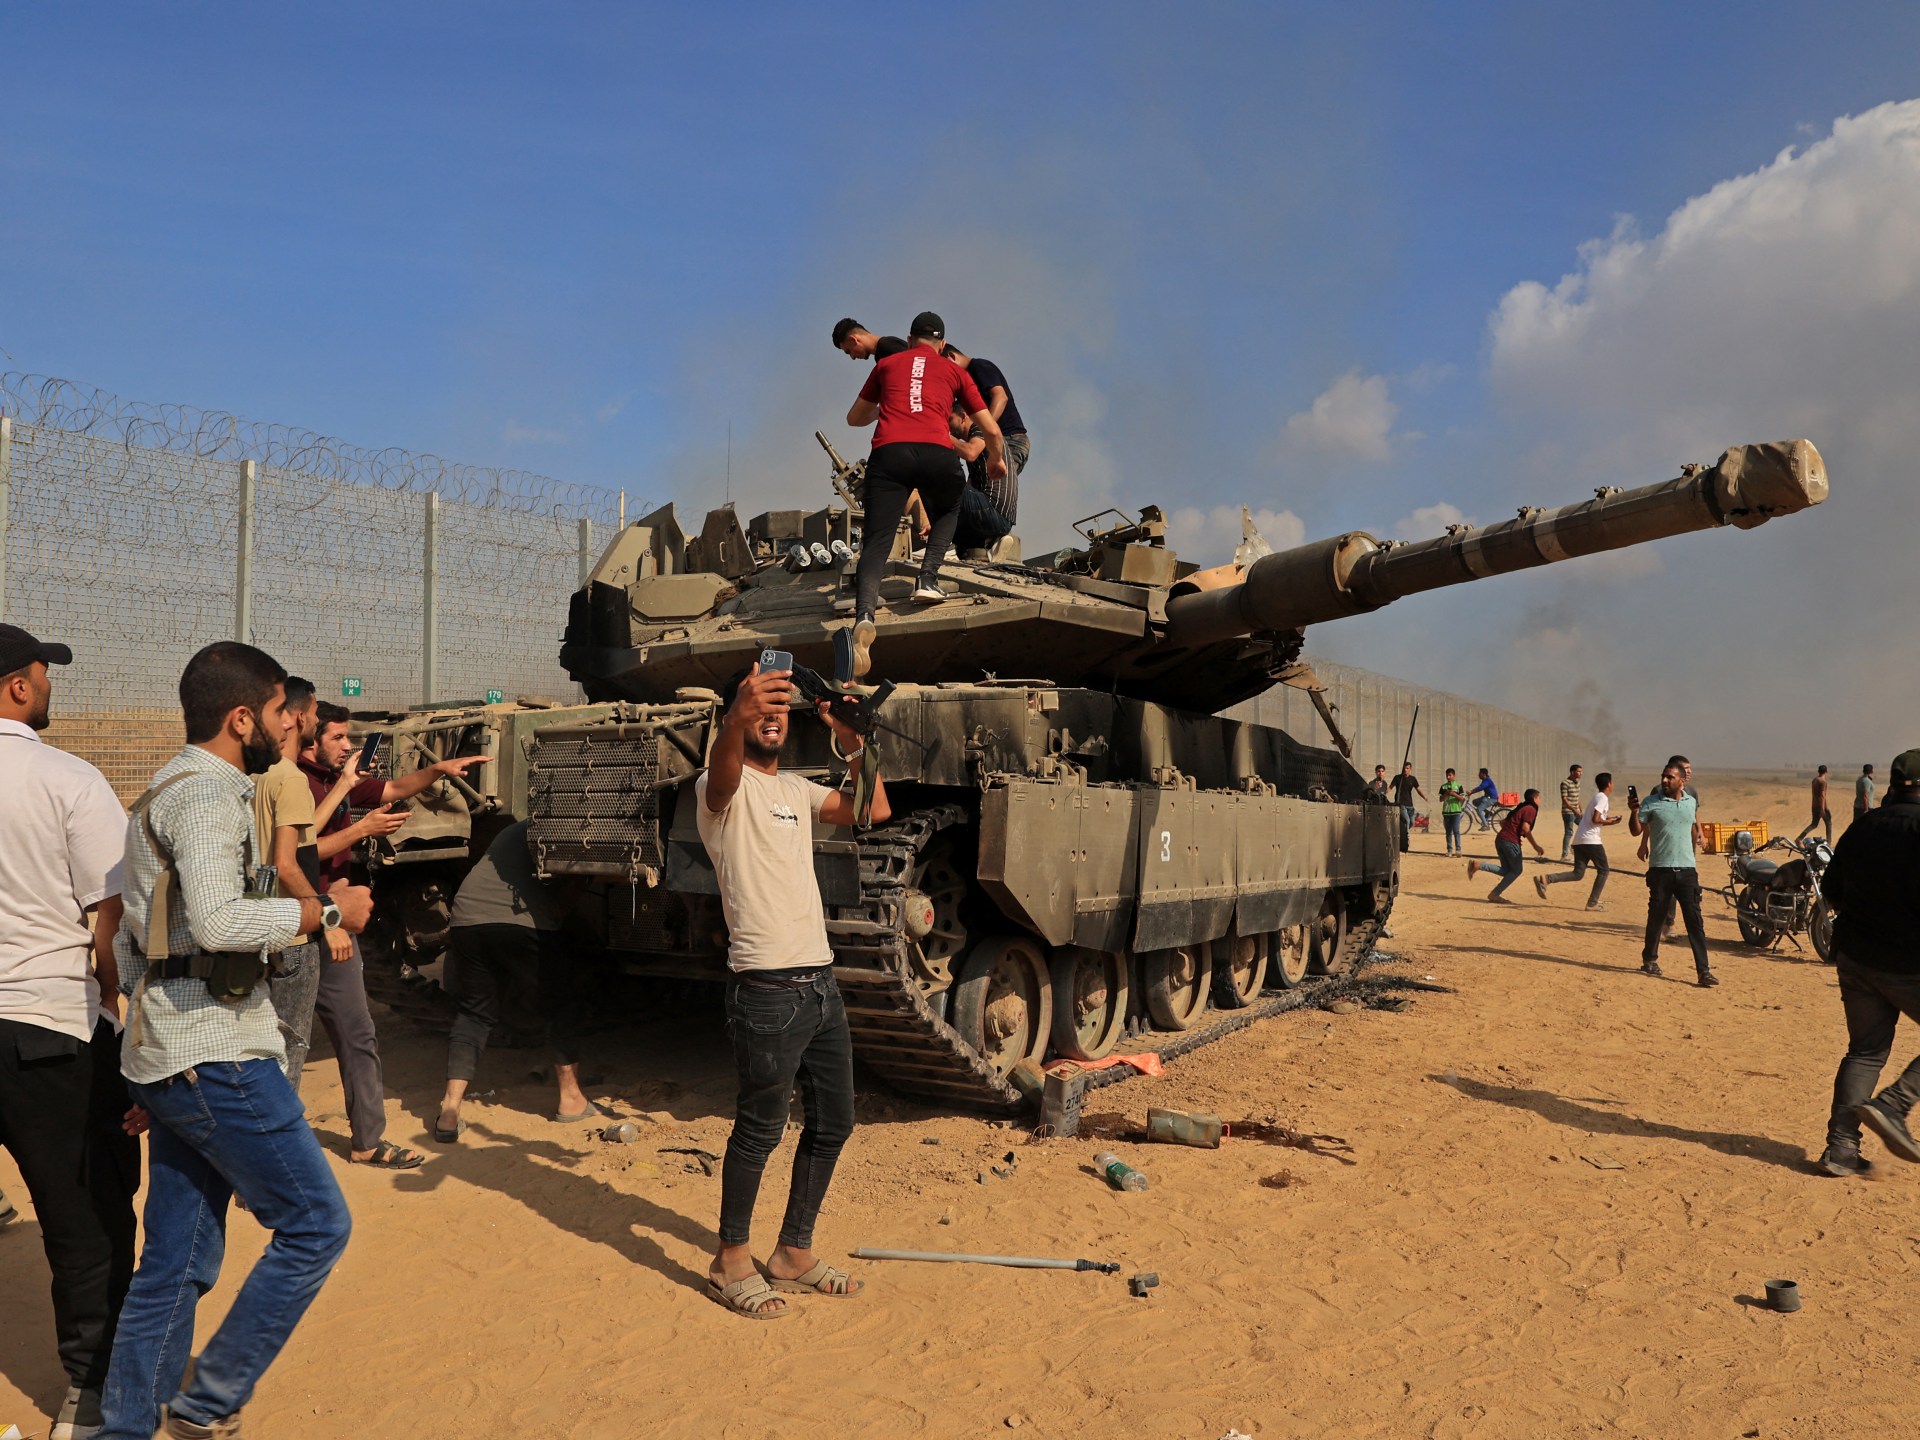 أبرز تطورات اليوم الـ 29 من الحرب الإسرائيلية على غزة | أخبار – البوكس نيوز